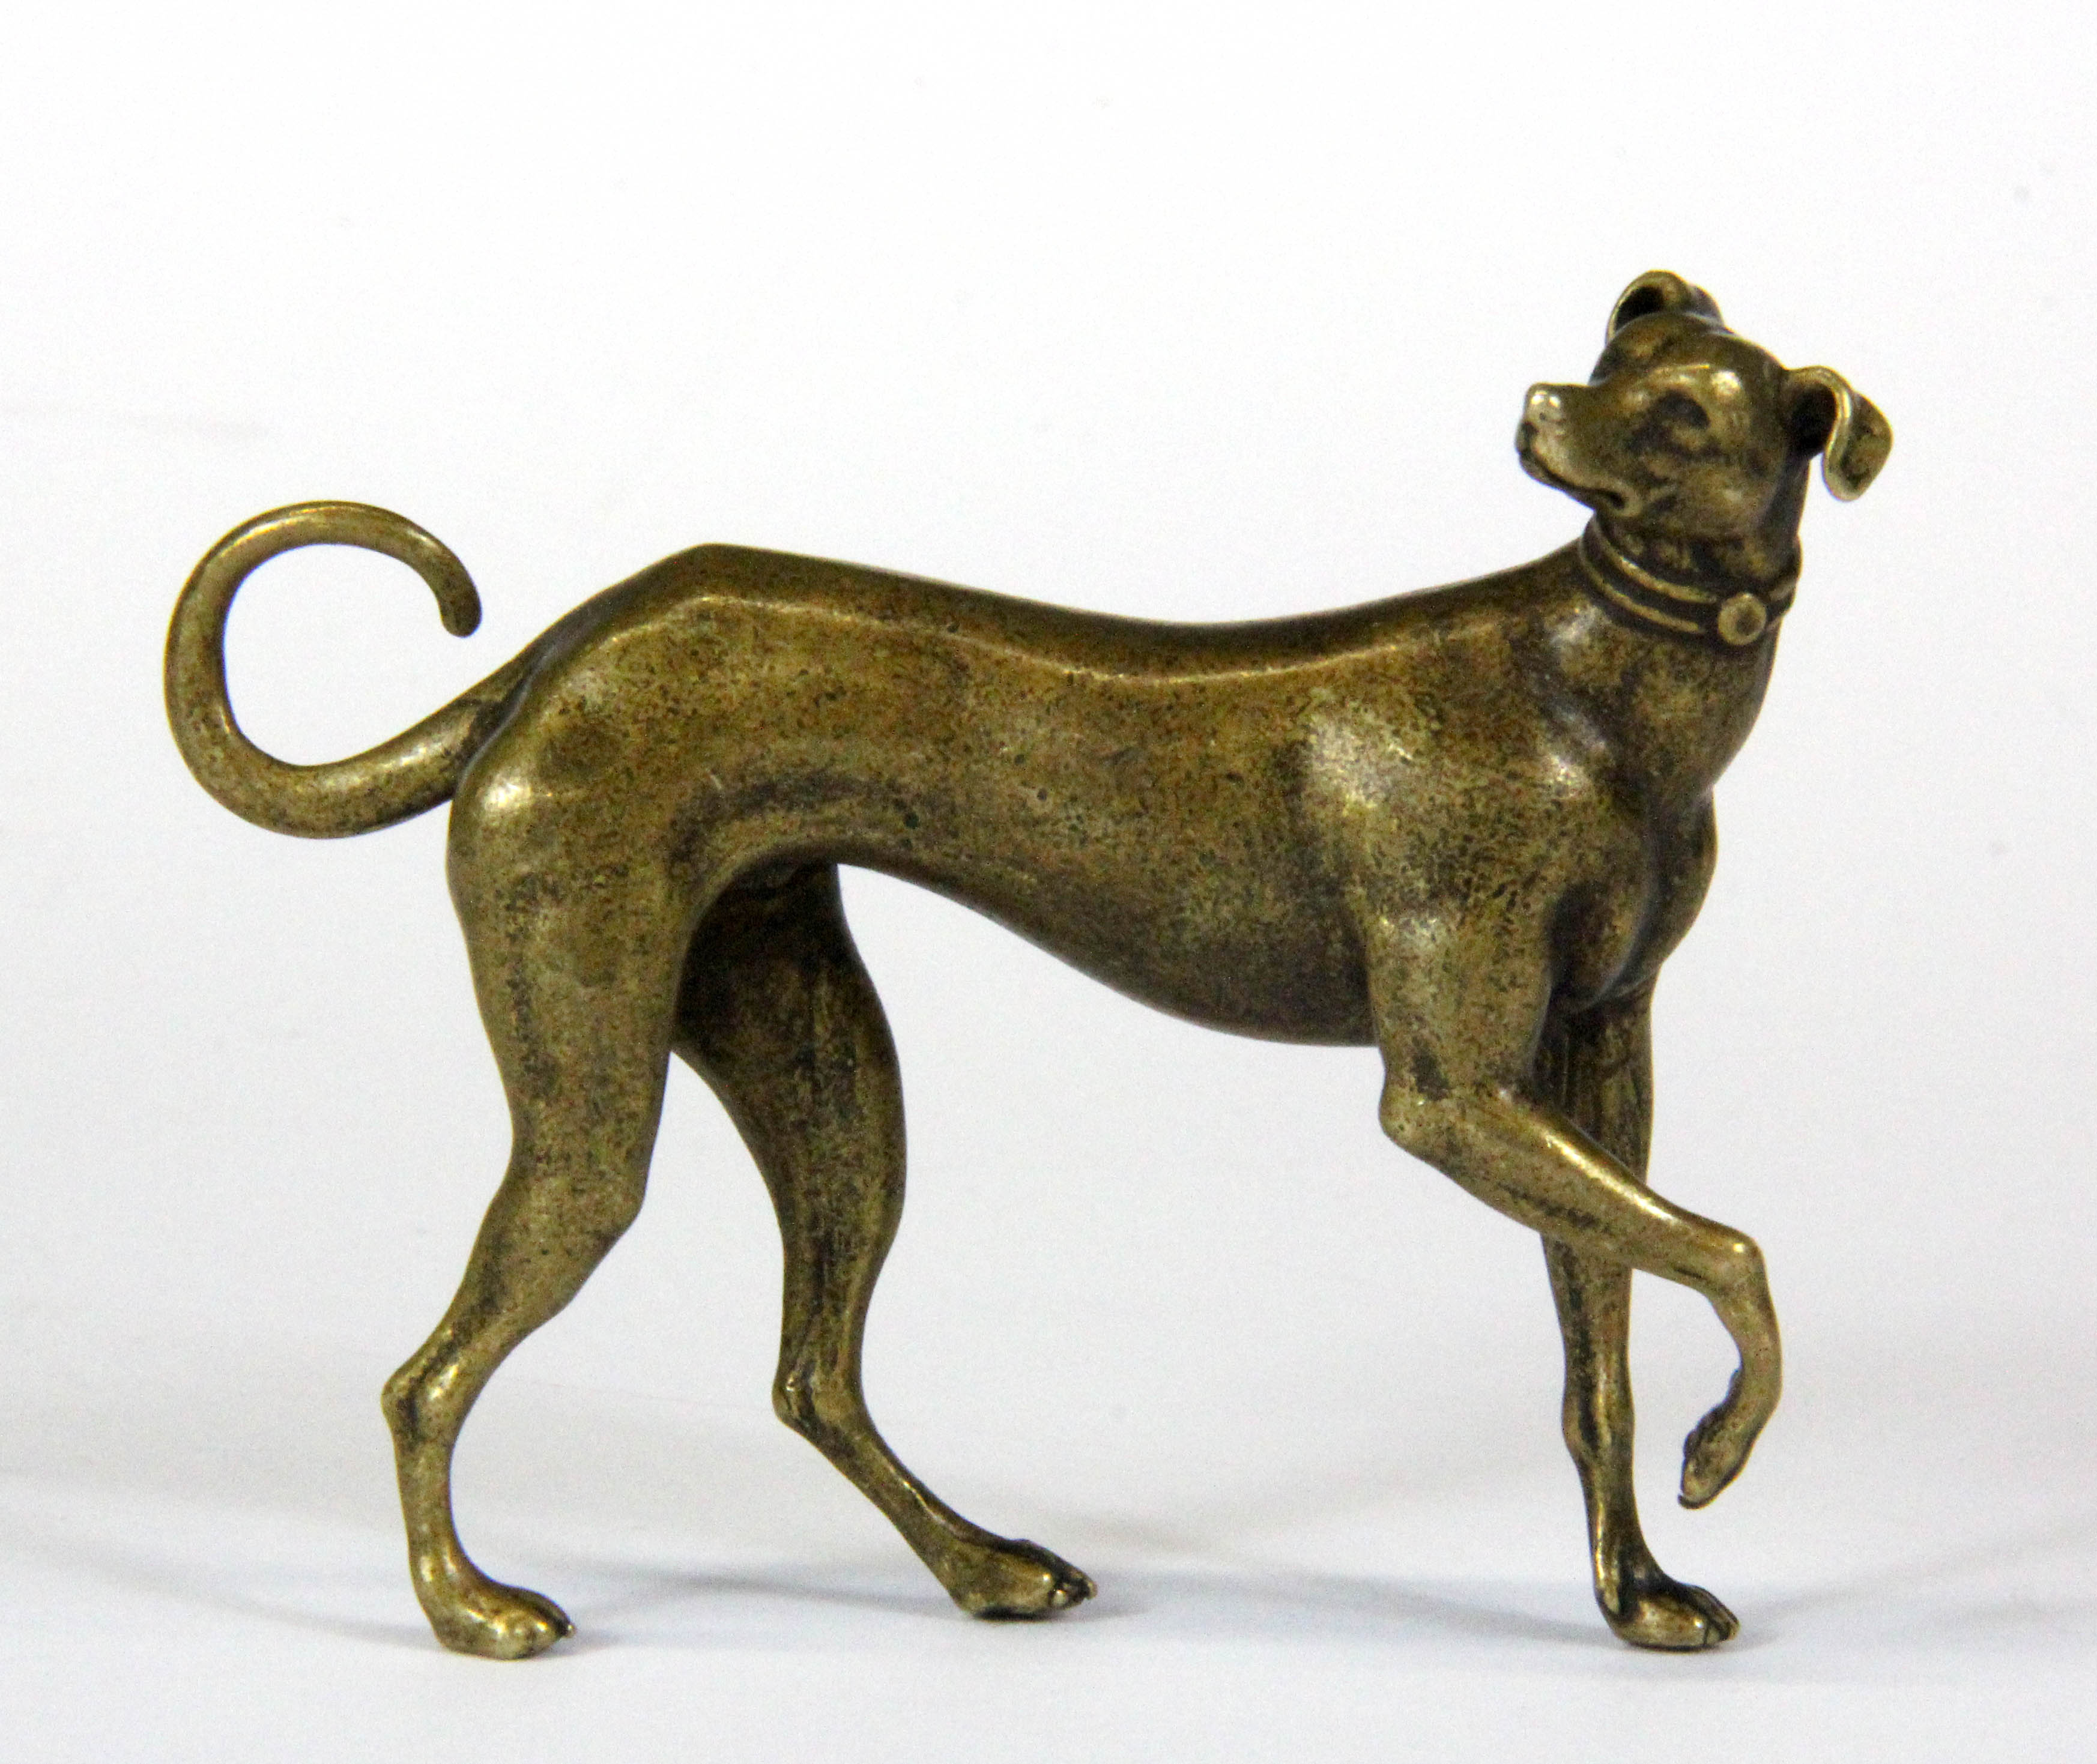 A miniature bronze figure of a dog, H. 5.5cm.